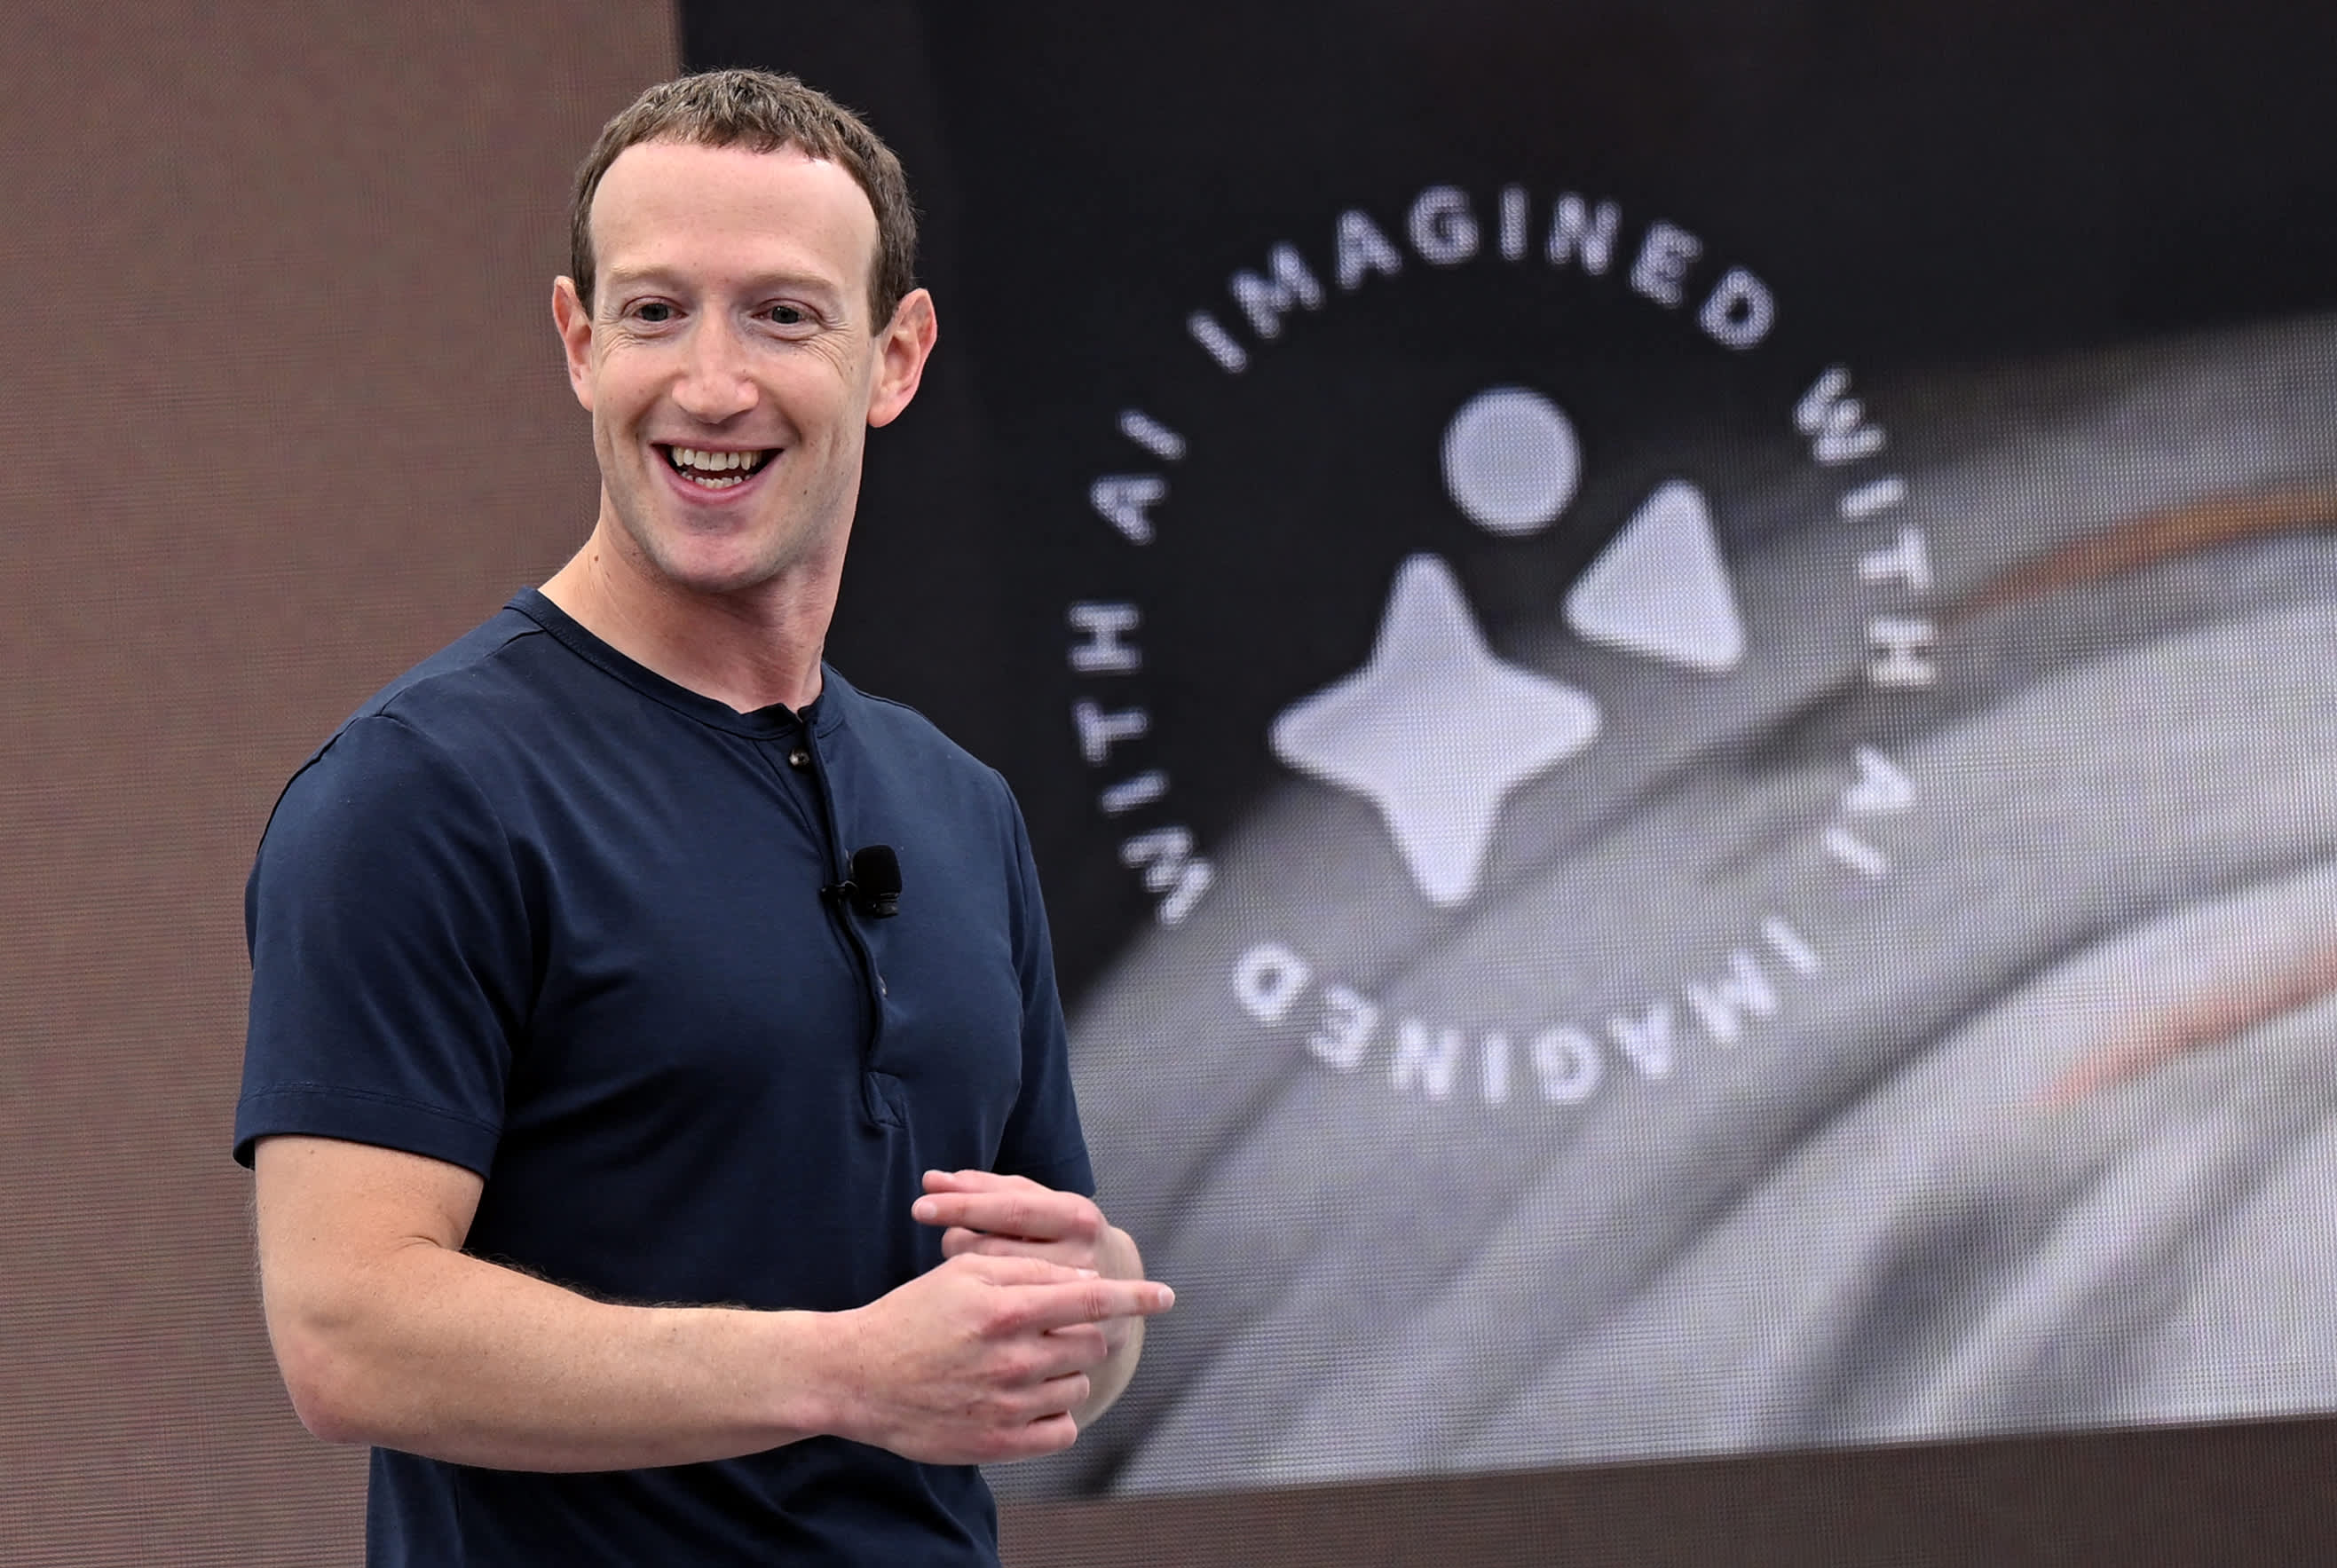 El CEO de Meta, Zuckerberg, recurre a asistentes digitales e inteligencia artificial para impulsar el Metaverso